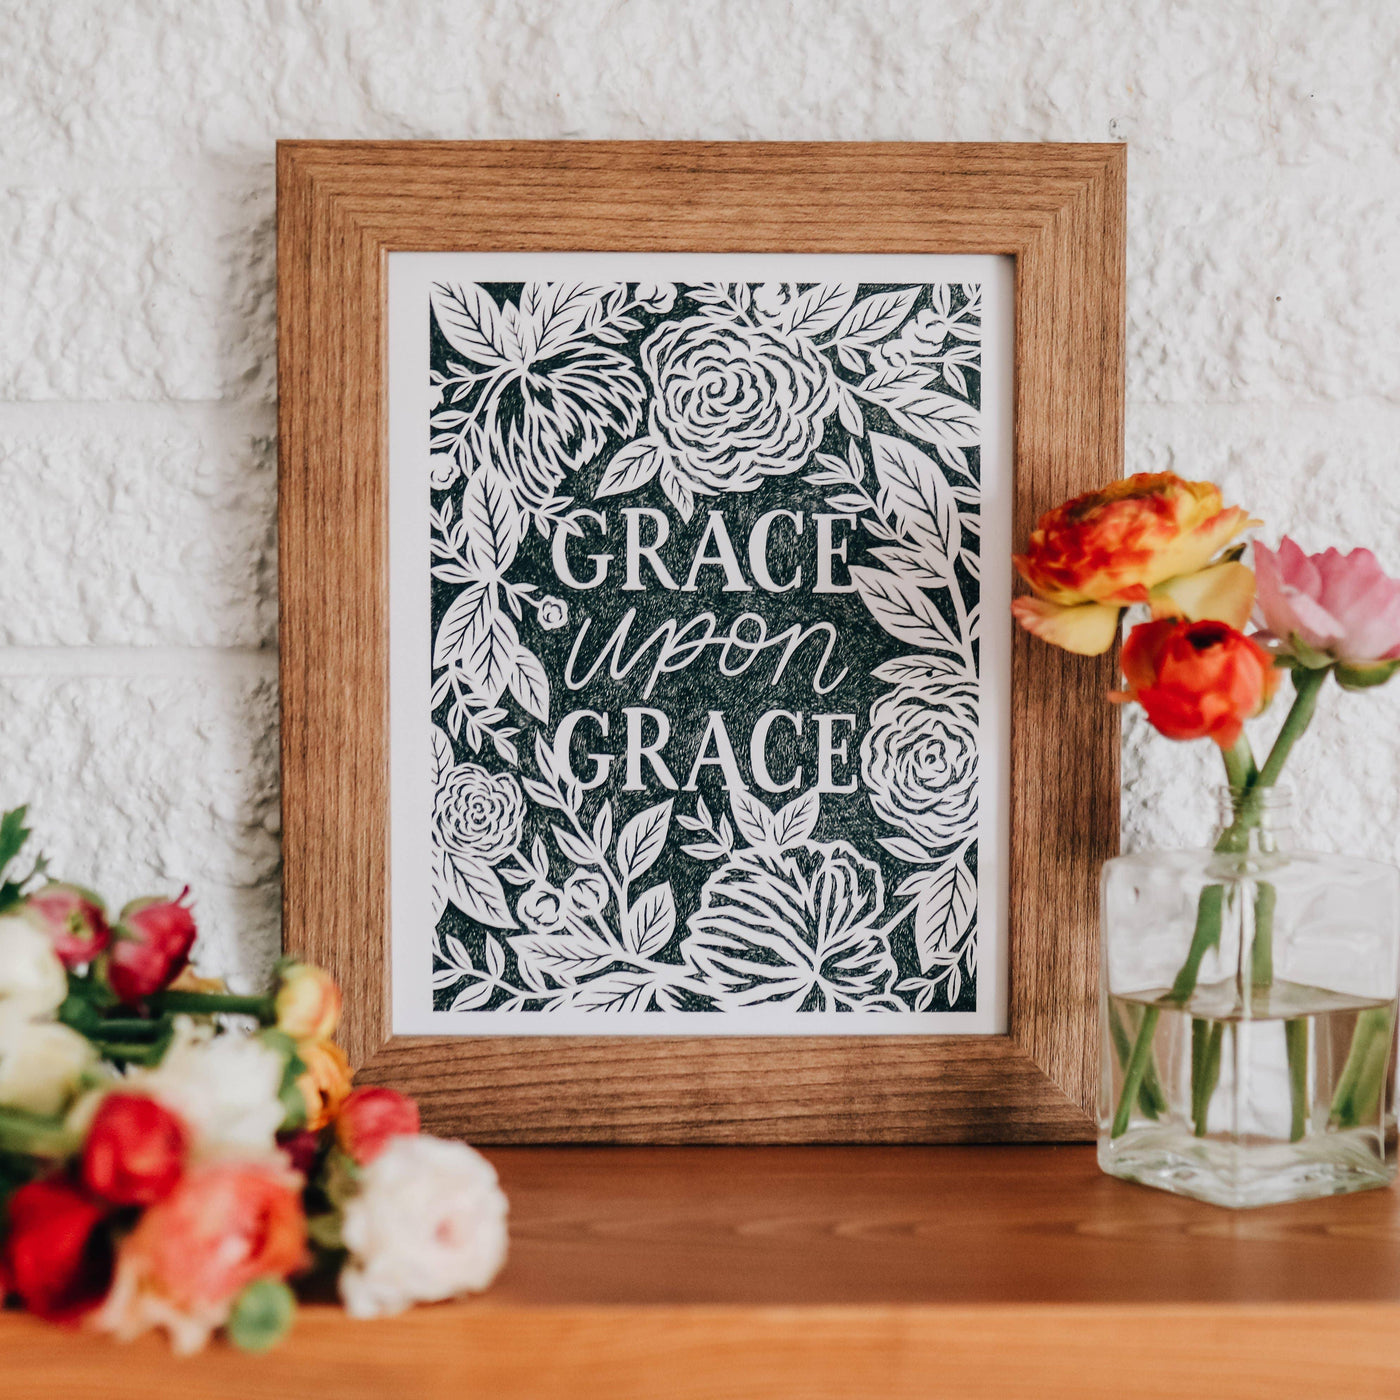 Grace Upon Grace Print | Fruit of the Vine Boutique 